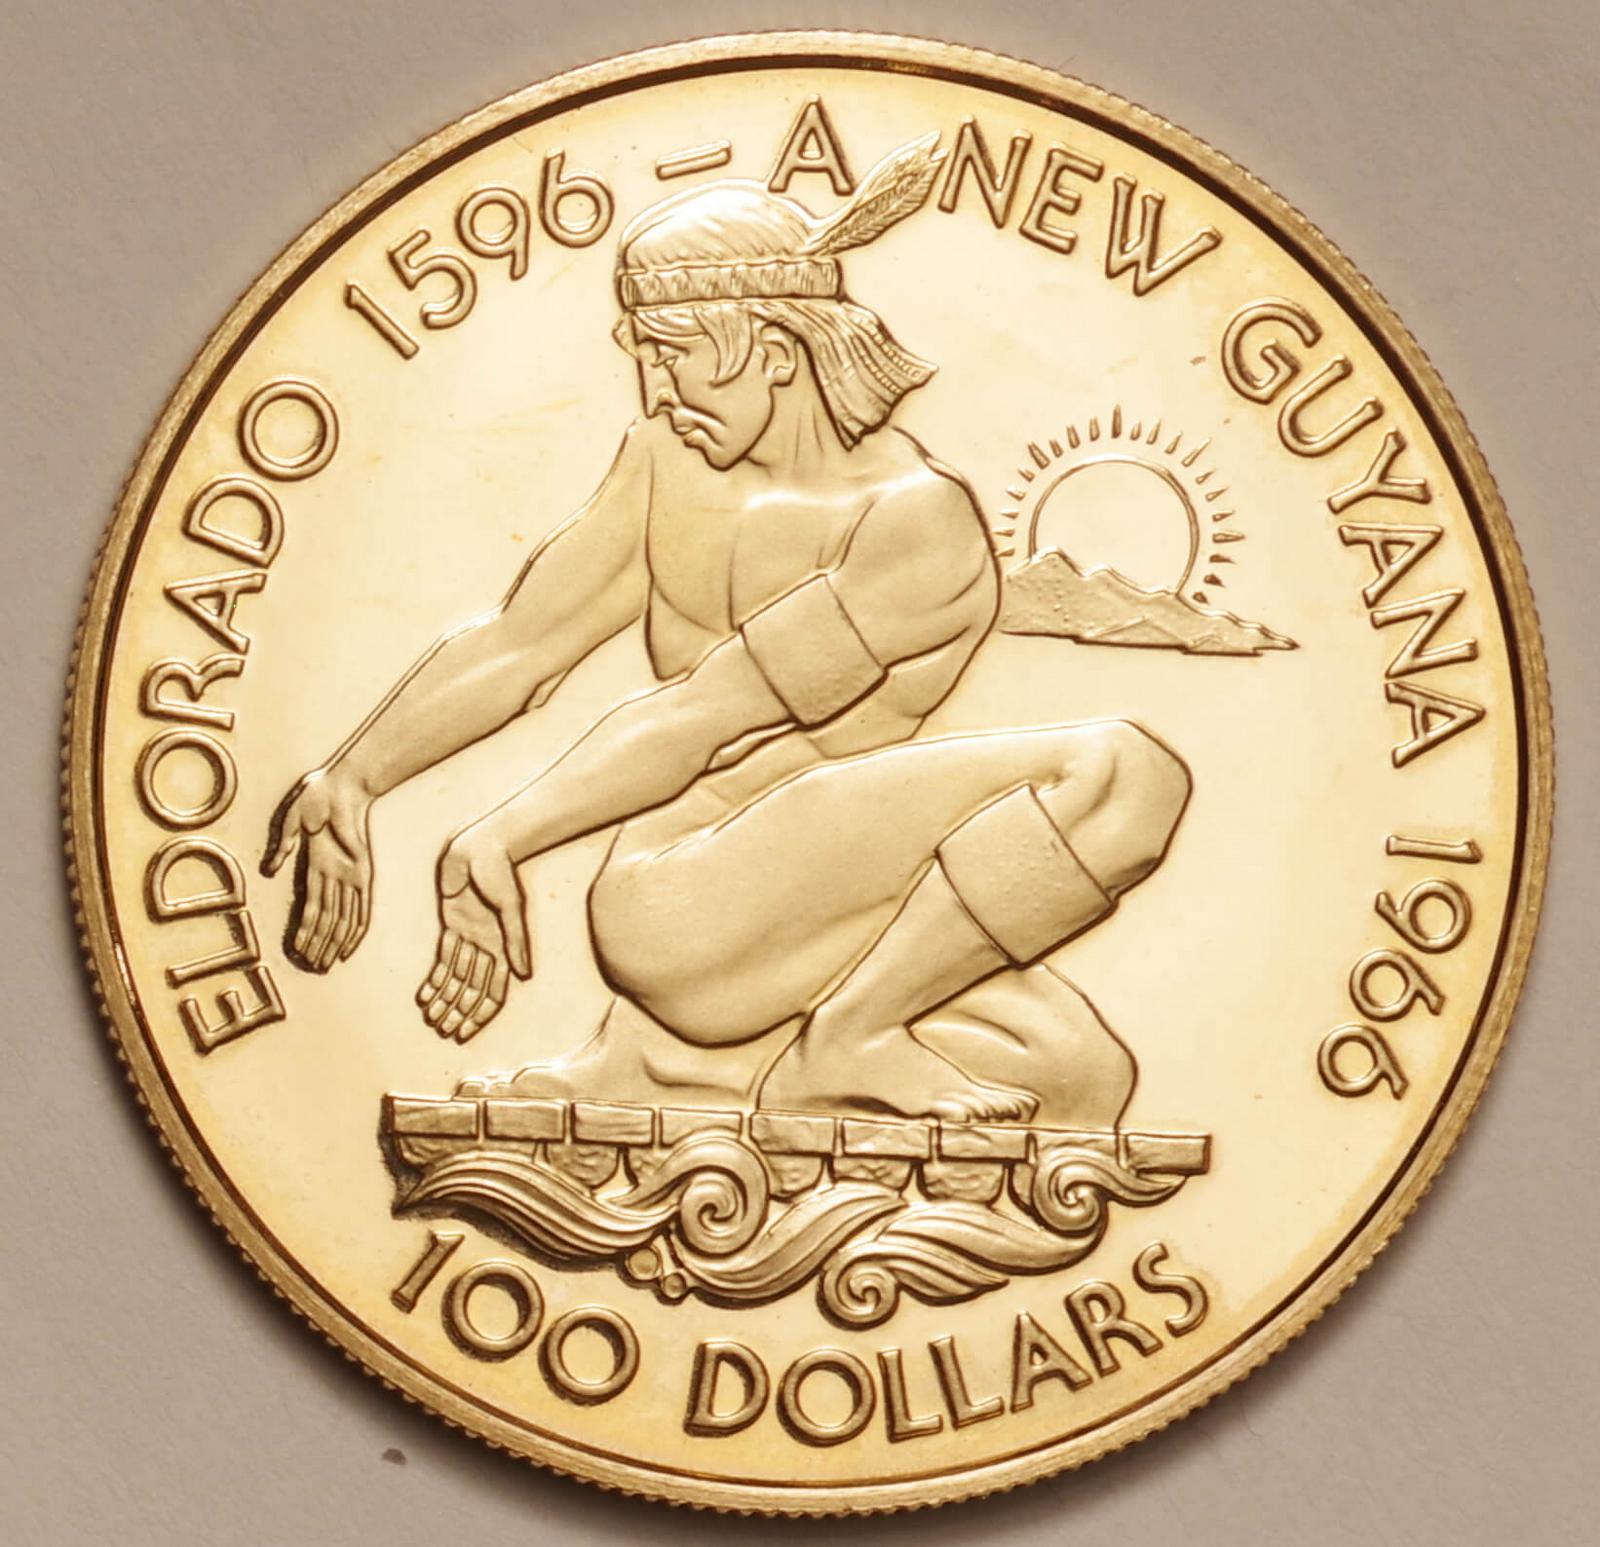 ガイアナ-Guyana. 独立10周年記念 アラワクインディアン 100ドル金貨 